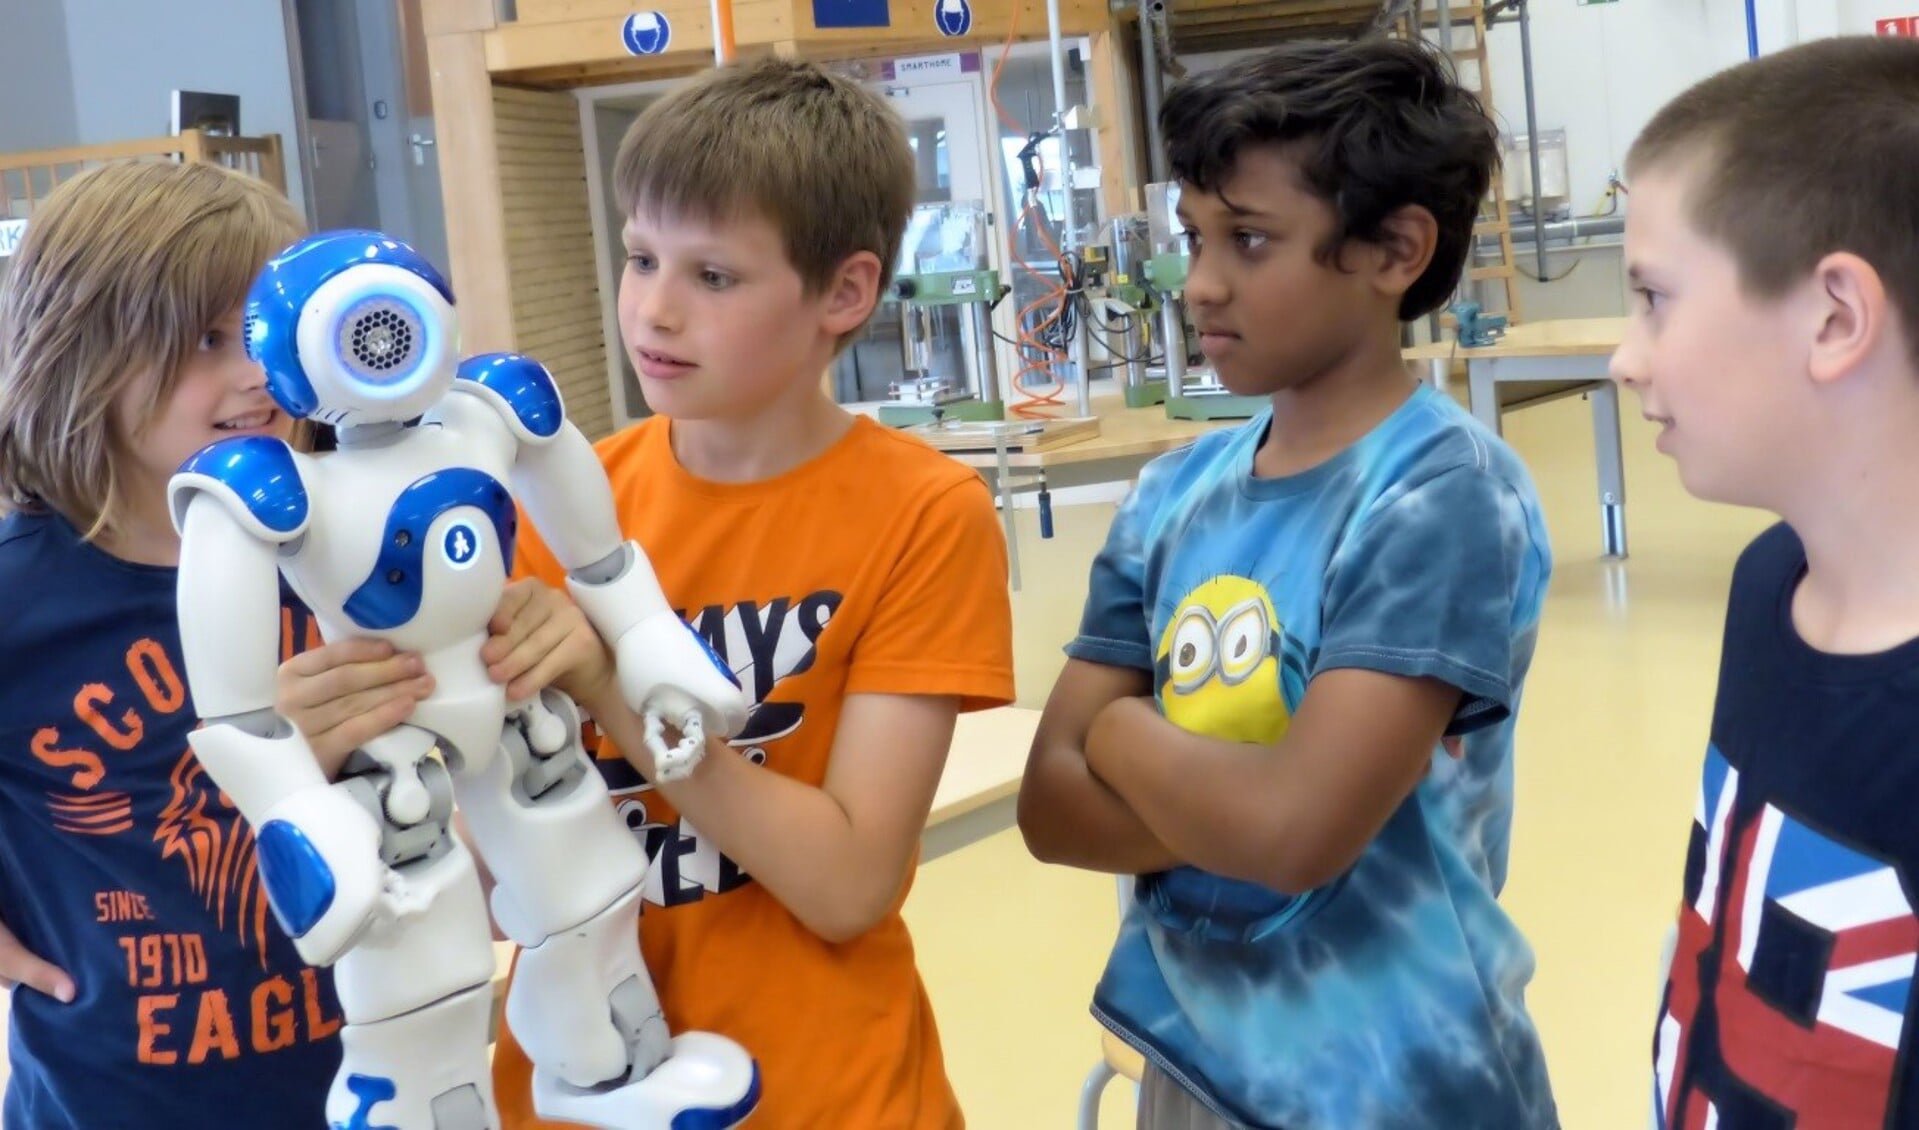 De demonstratie van een NAO , een menselijke robot. De kinderen gaven hem de naam 'Luuk'.